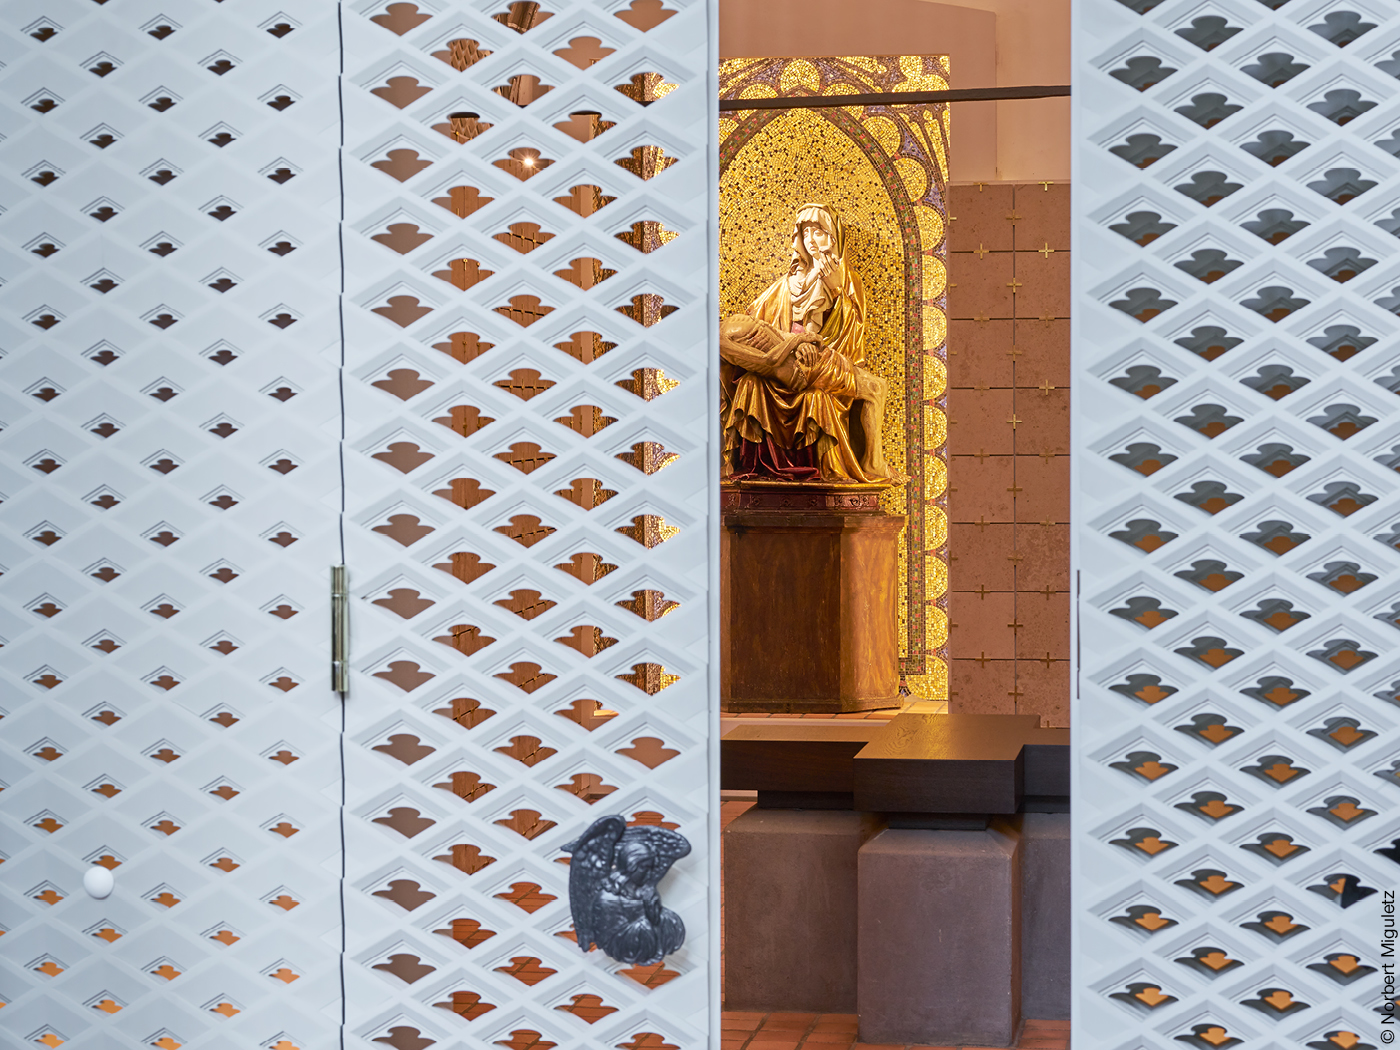 Weiße Gitterwand in Kirche mit Blick auf Statue